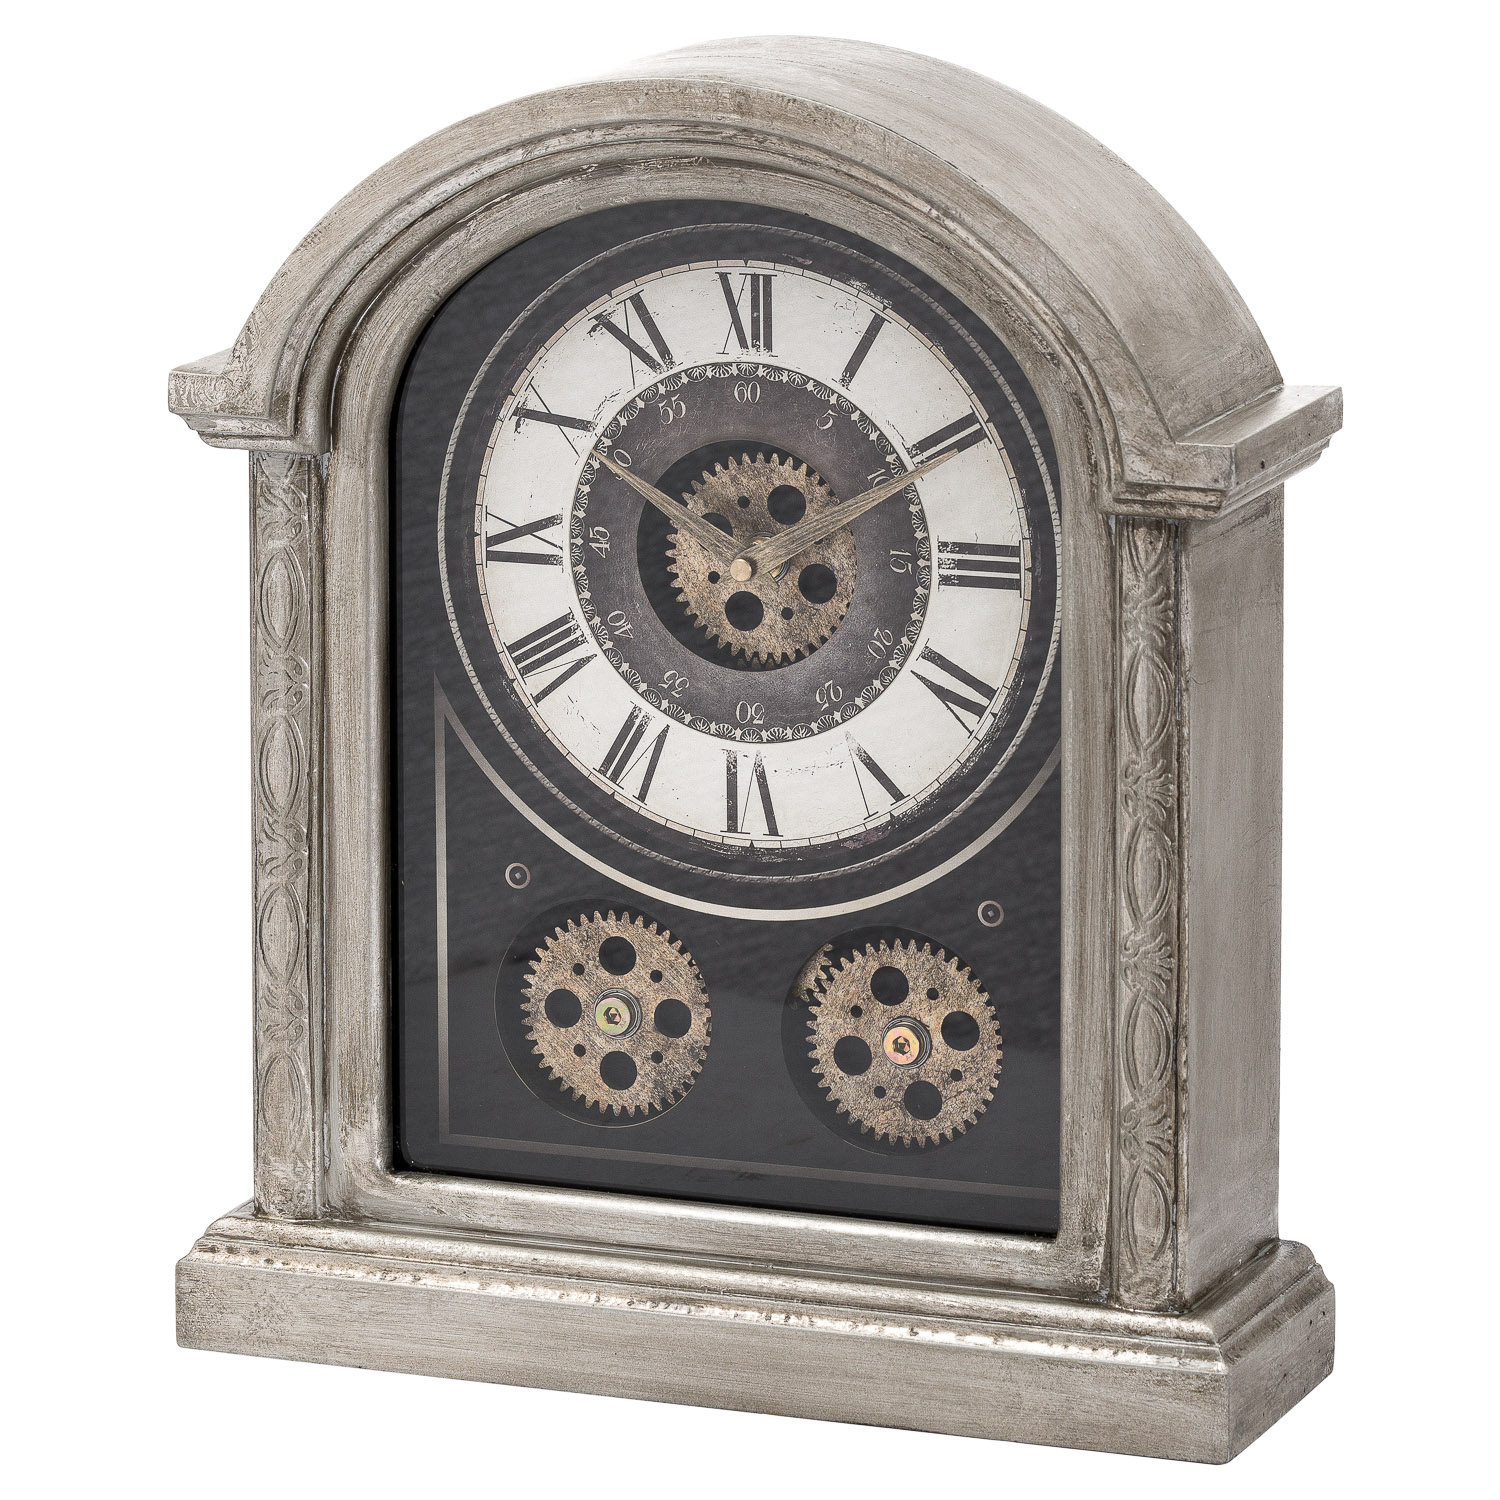 Antique Silver Mechanism Mantle Clock - Image 1